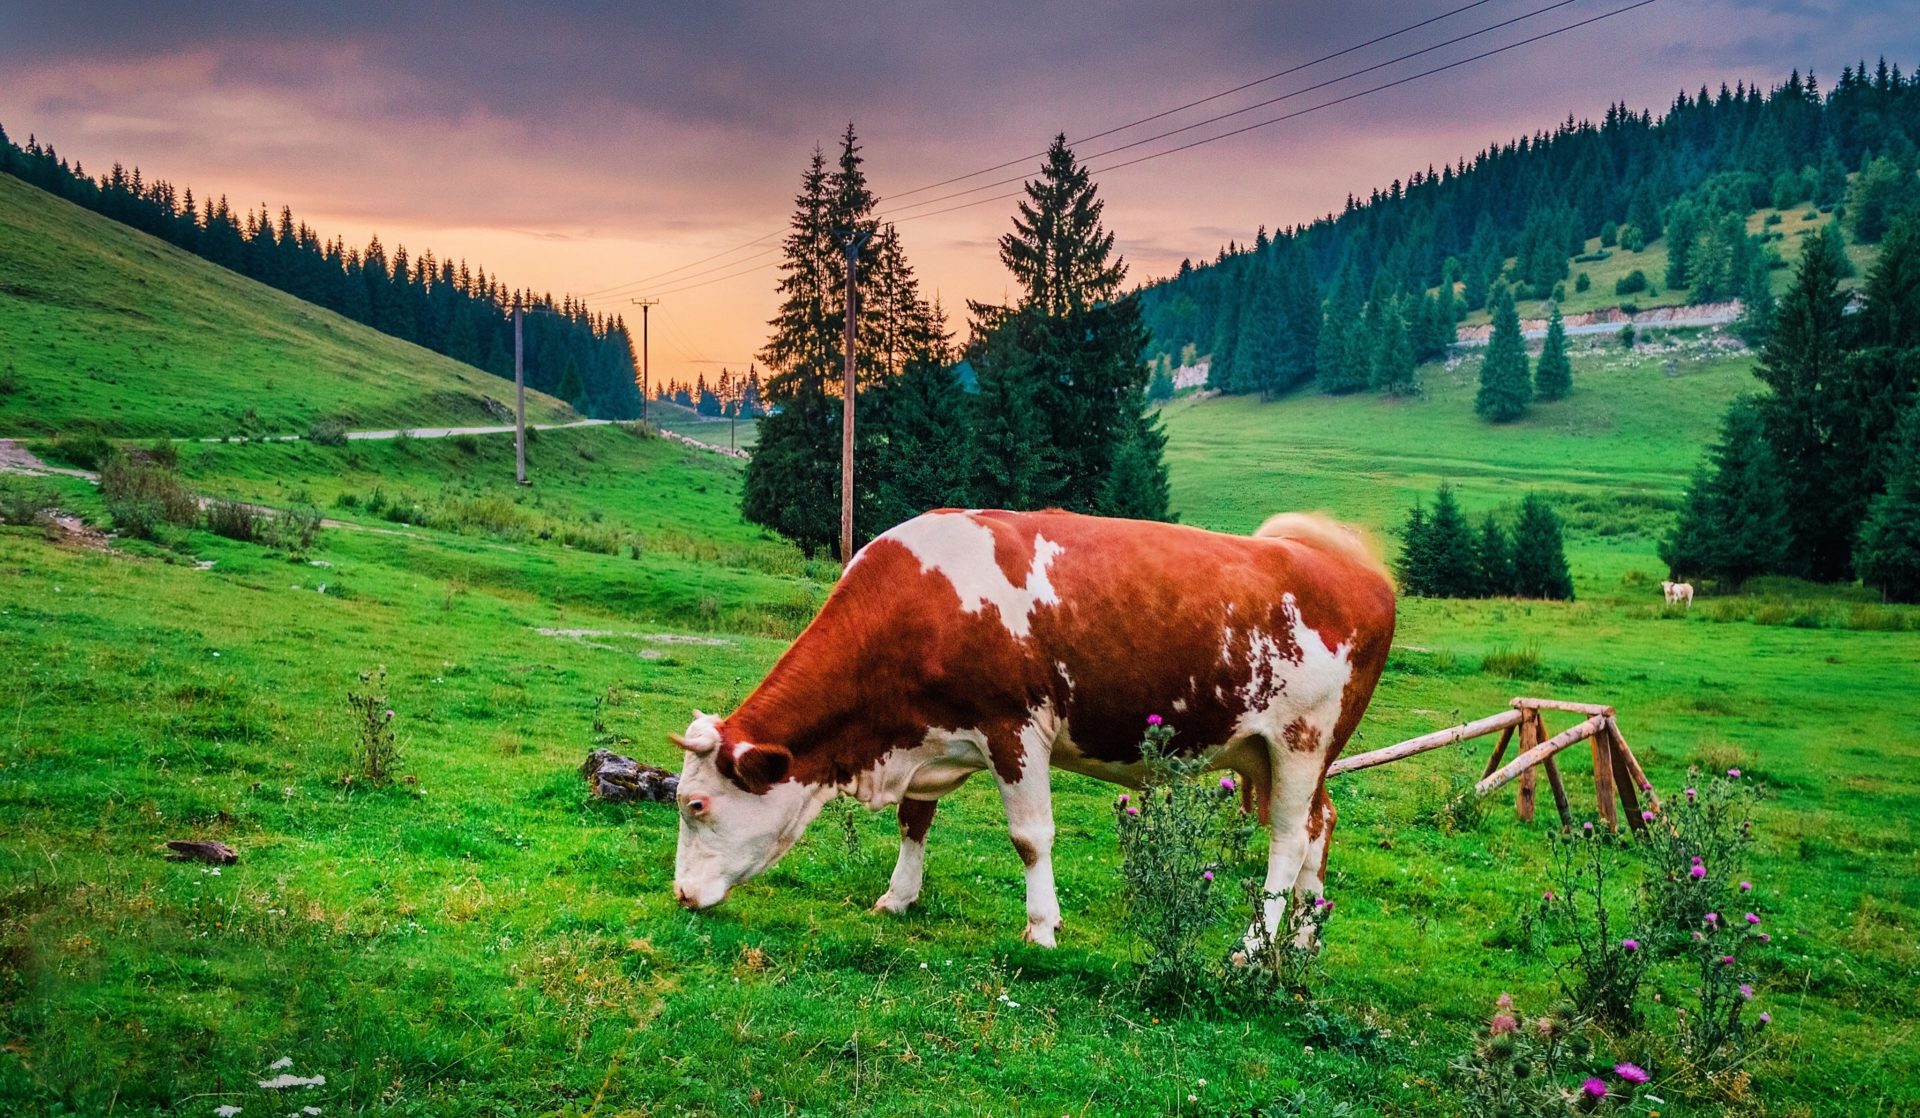 นักวิทยาศาสตร์ค้นพบจุลินทรีย์ในกระเพาะอาหารของวัวที่สามารถช่วยย่อยพลาสติกได้!